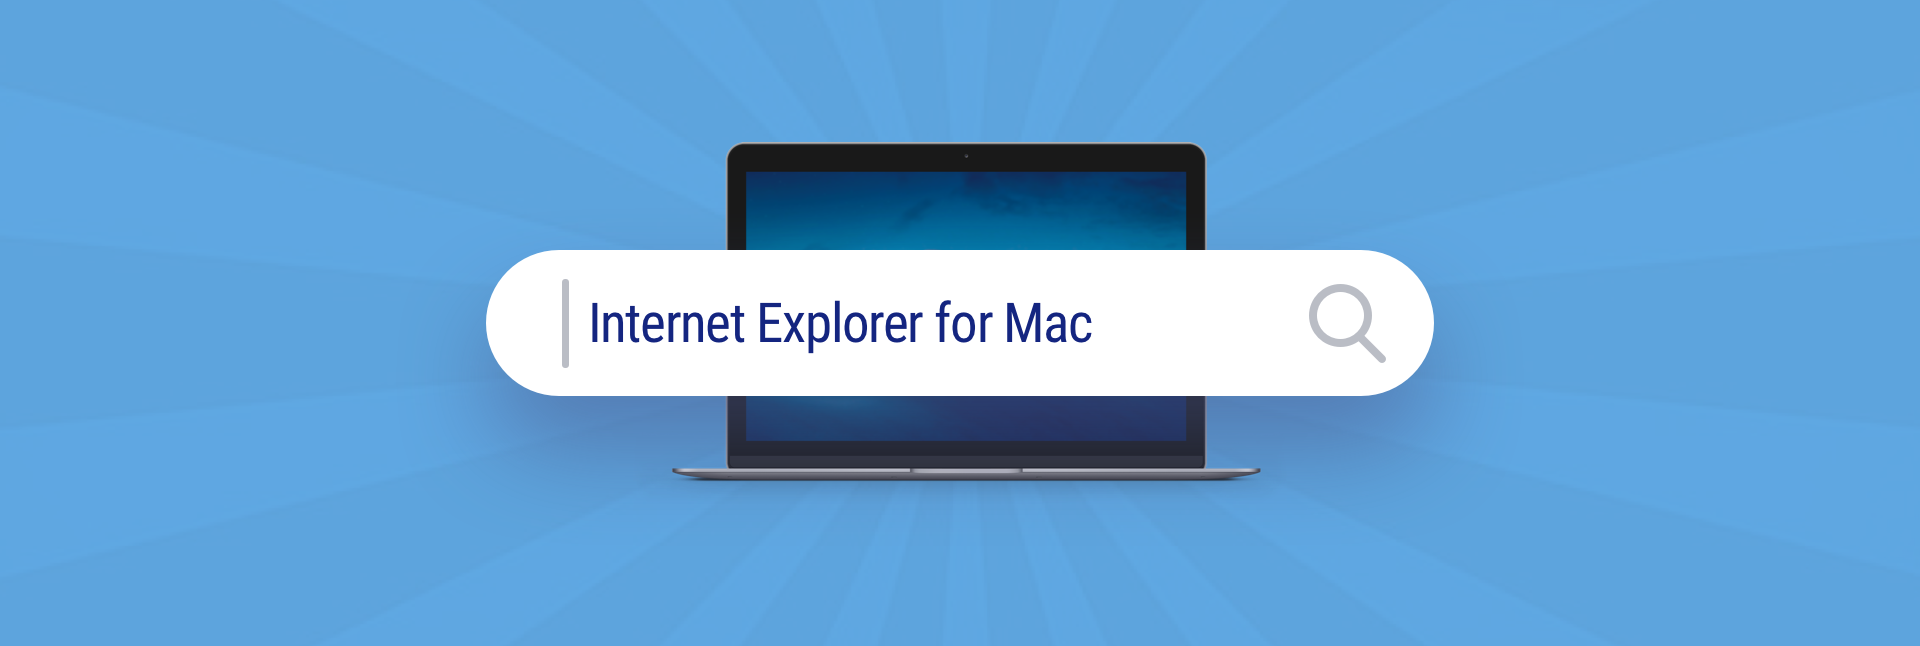 internet explorer for mac os x 10.12.5